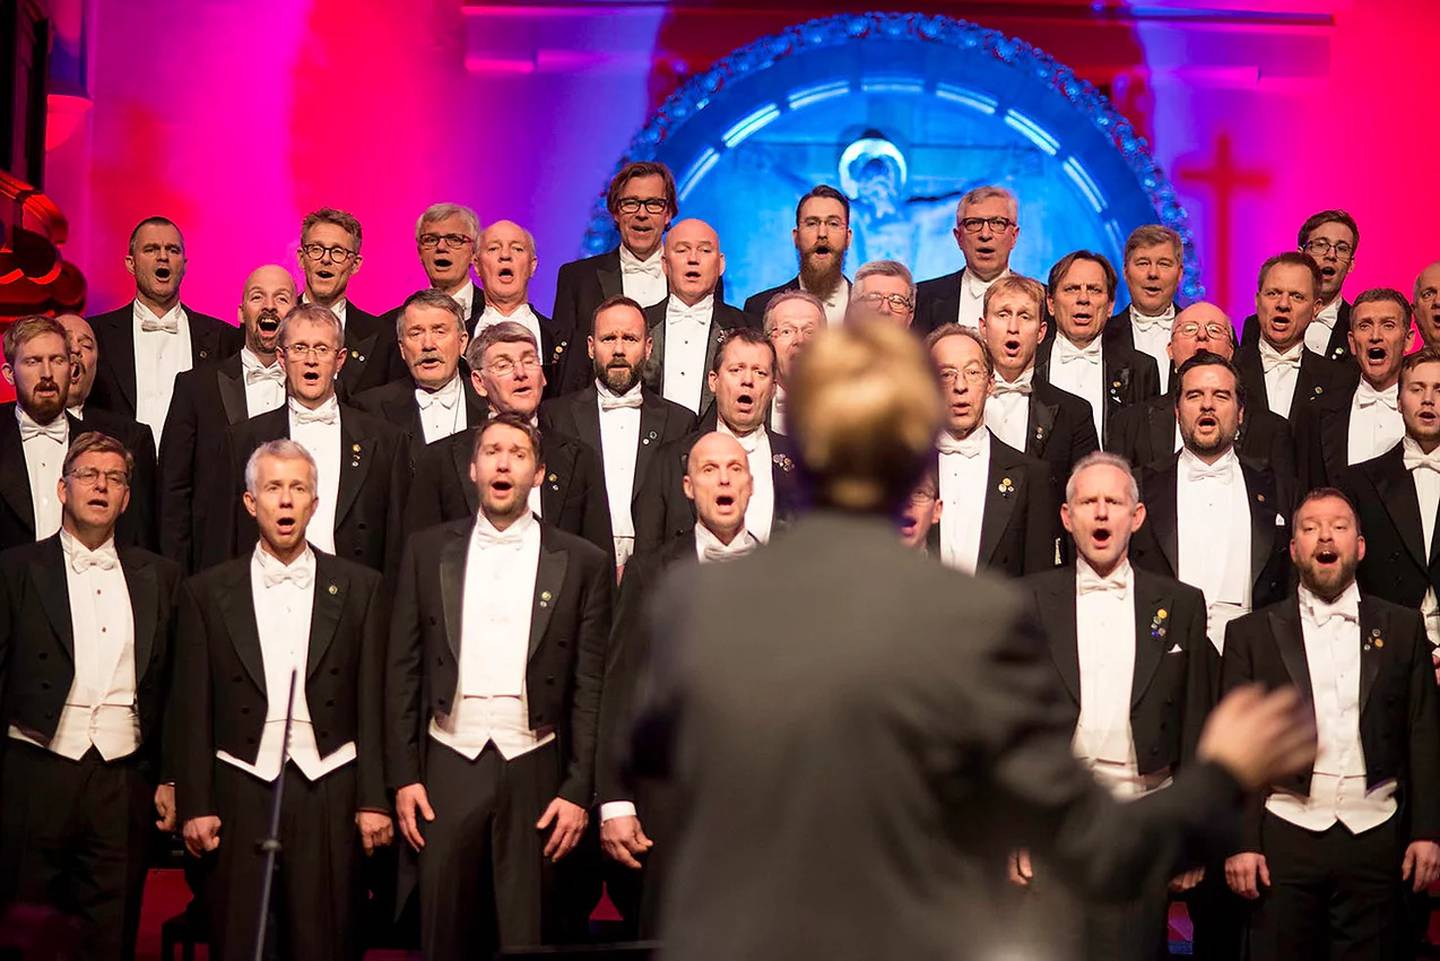 AVLYSER: Guldbergs Akademiske Selskab avlyste sine konserter denne uka: – Vi føler vi har et moralsk ansvar, sier styreleder i mannskoret.